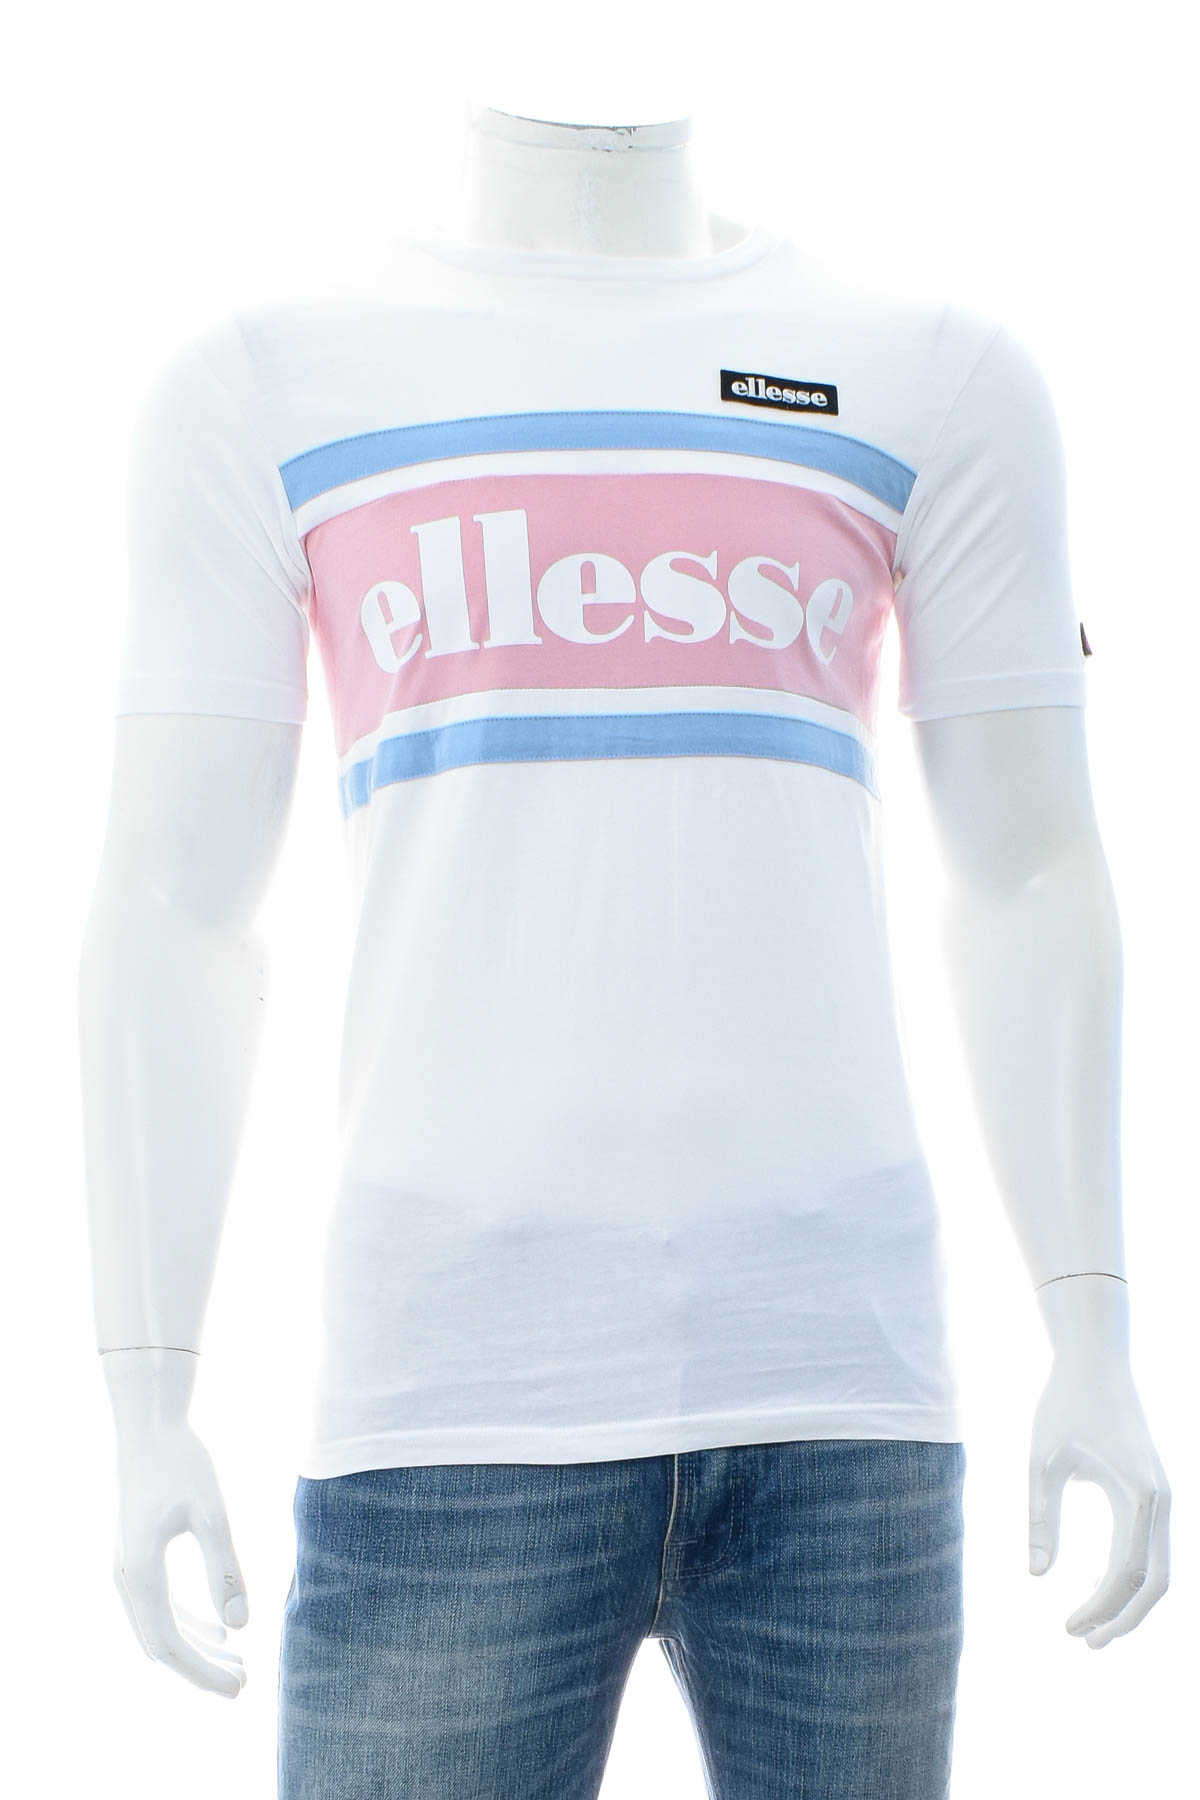 Αντρική μπλούζα - Ellesse - 0